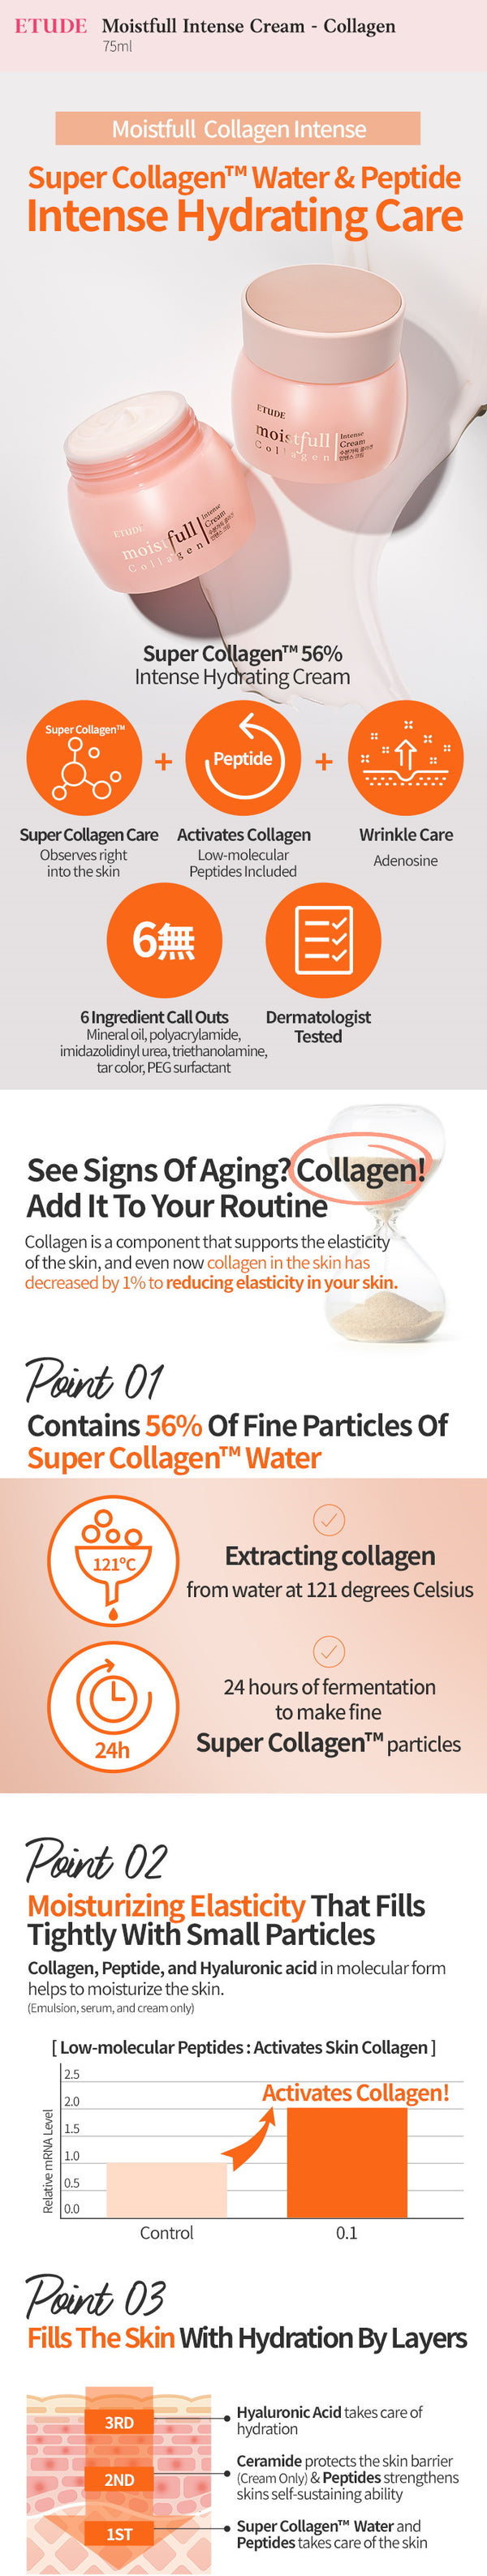 Moistfull Collagen Intense Cream 75ml